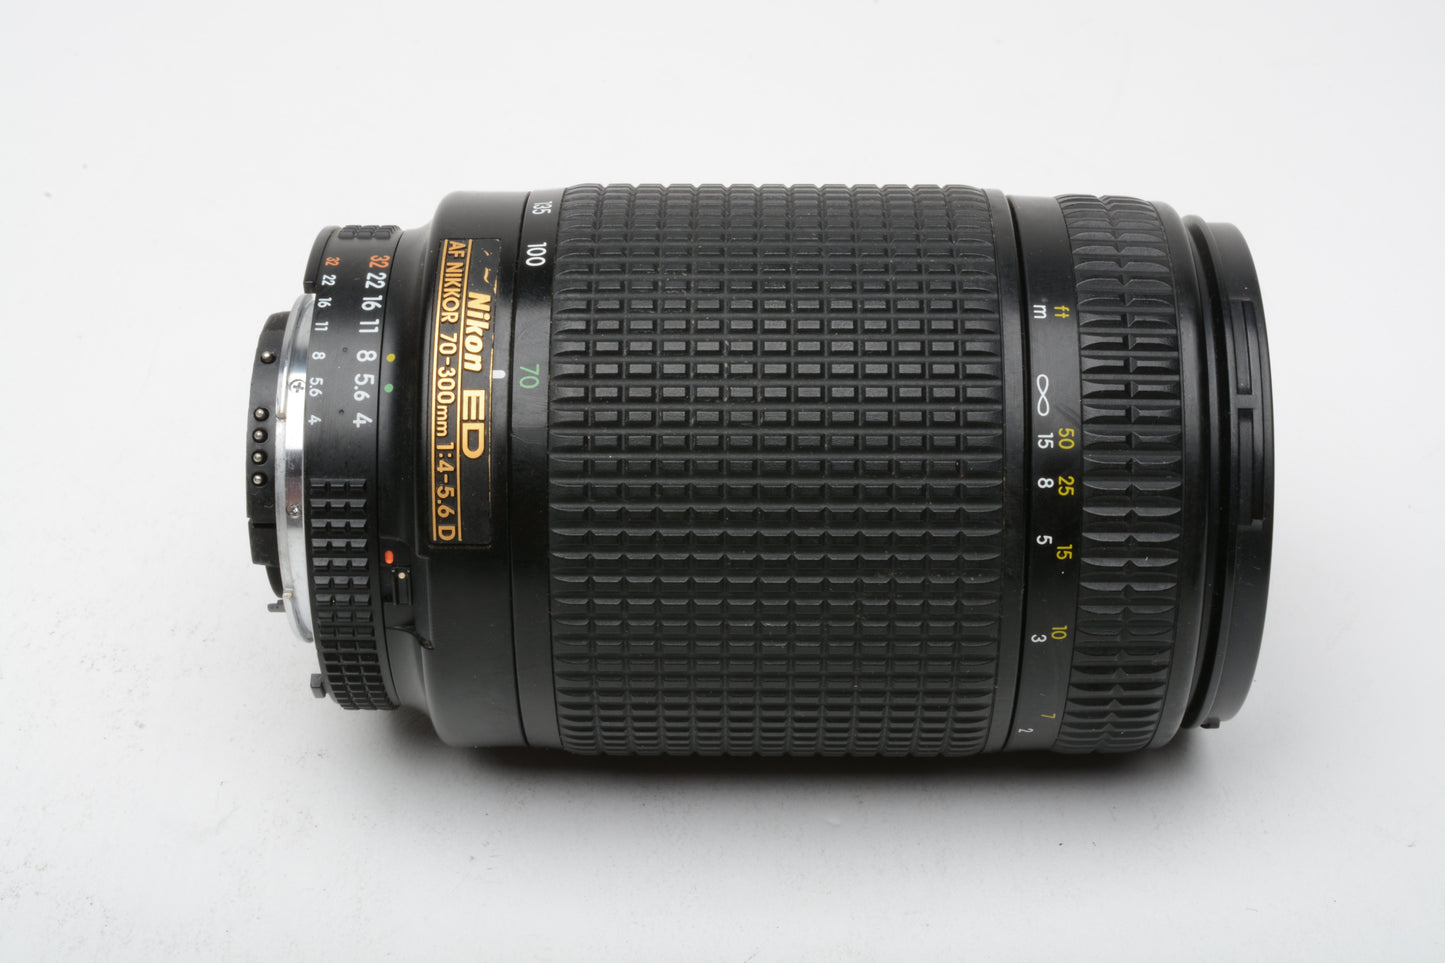 Nikon ED AF Nikkor 70-300mm f4-5.6D zoom lens + caps, bargain